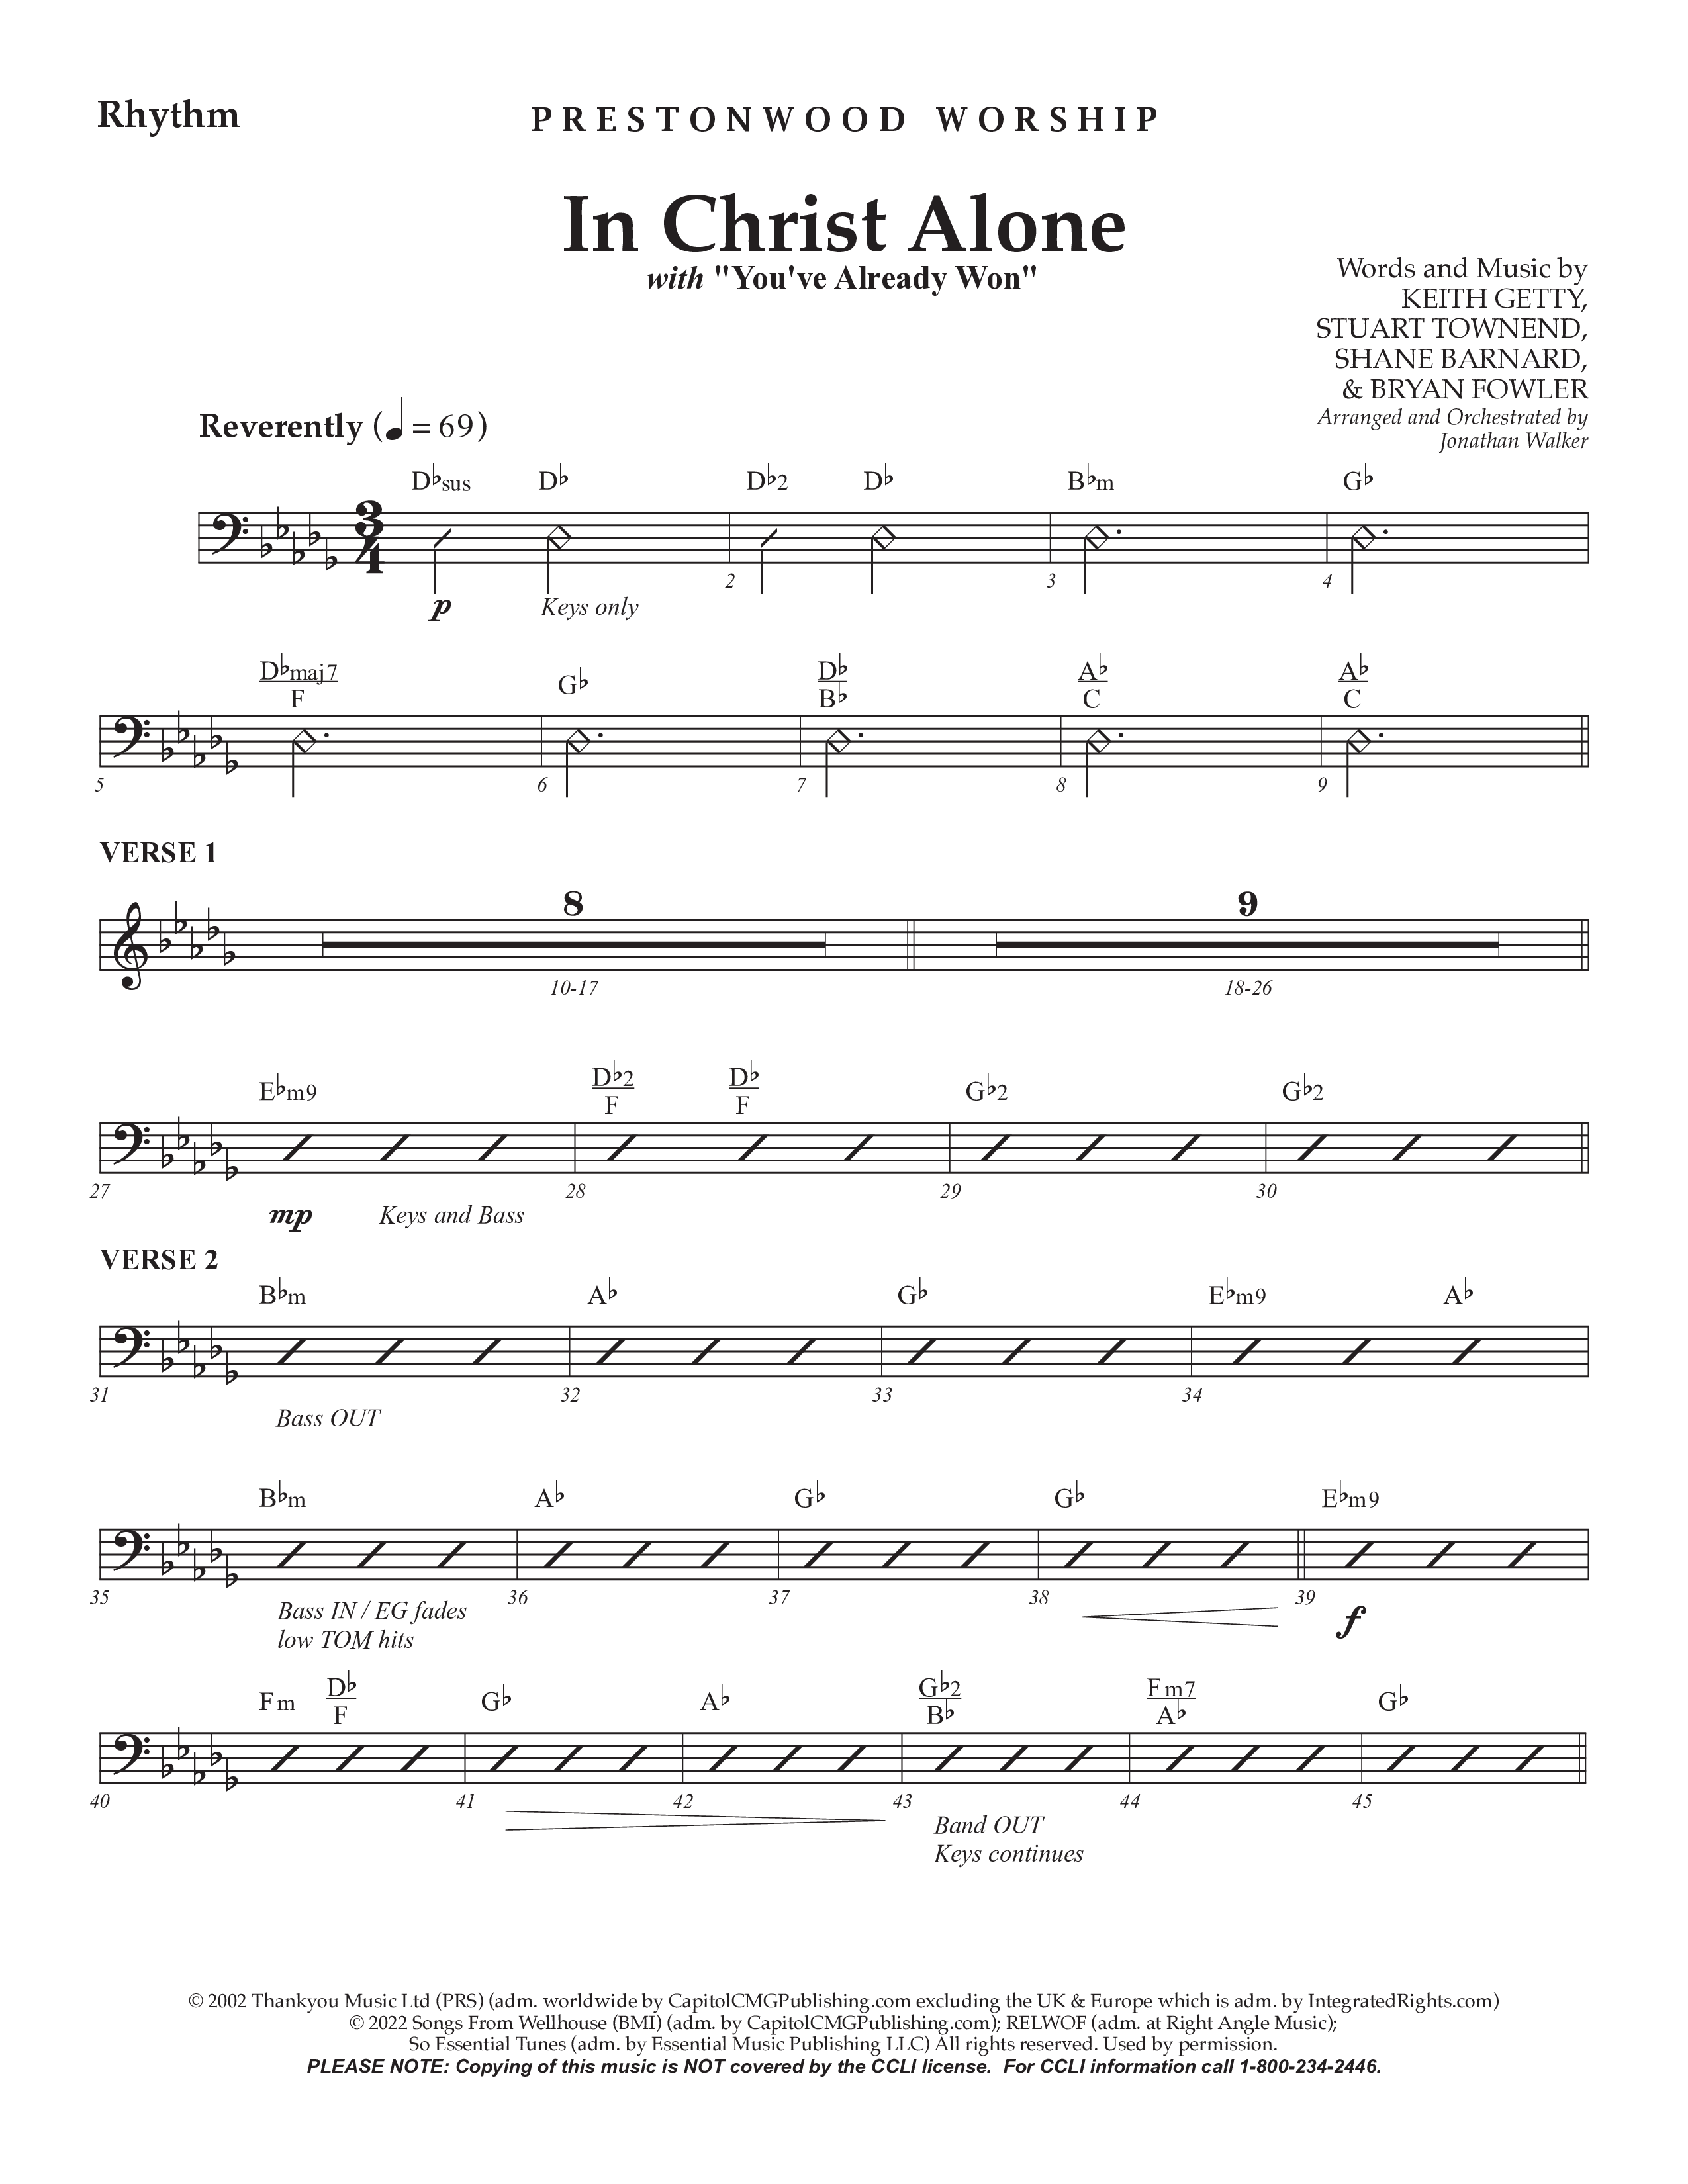 In Christ Alone with You've Already Won (Choral Anthem SATB) Rhythm Chart (Prestonwood Choir / Prestonwood Worship / Arr. Jonathan Walker)